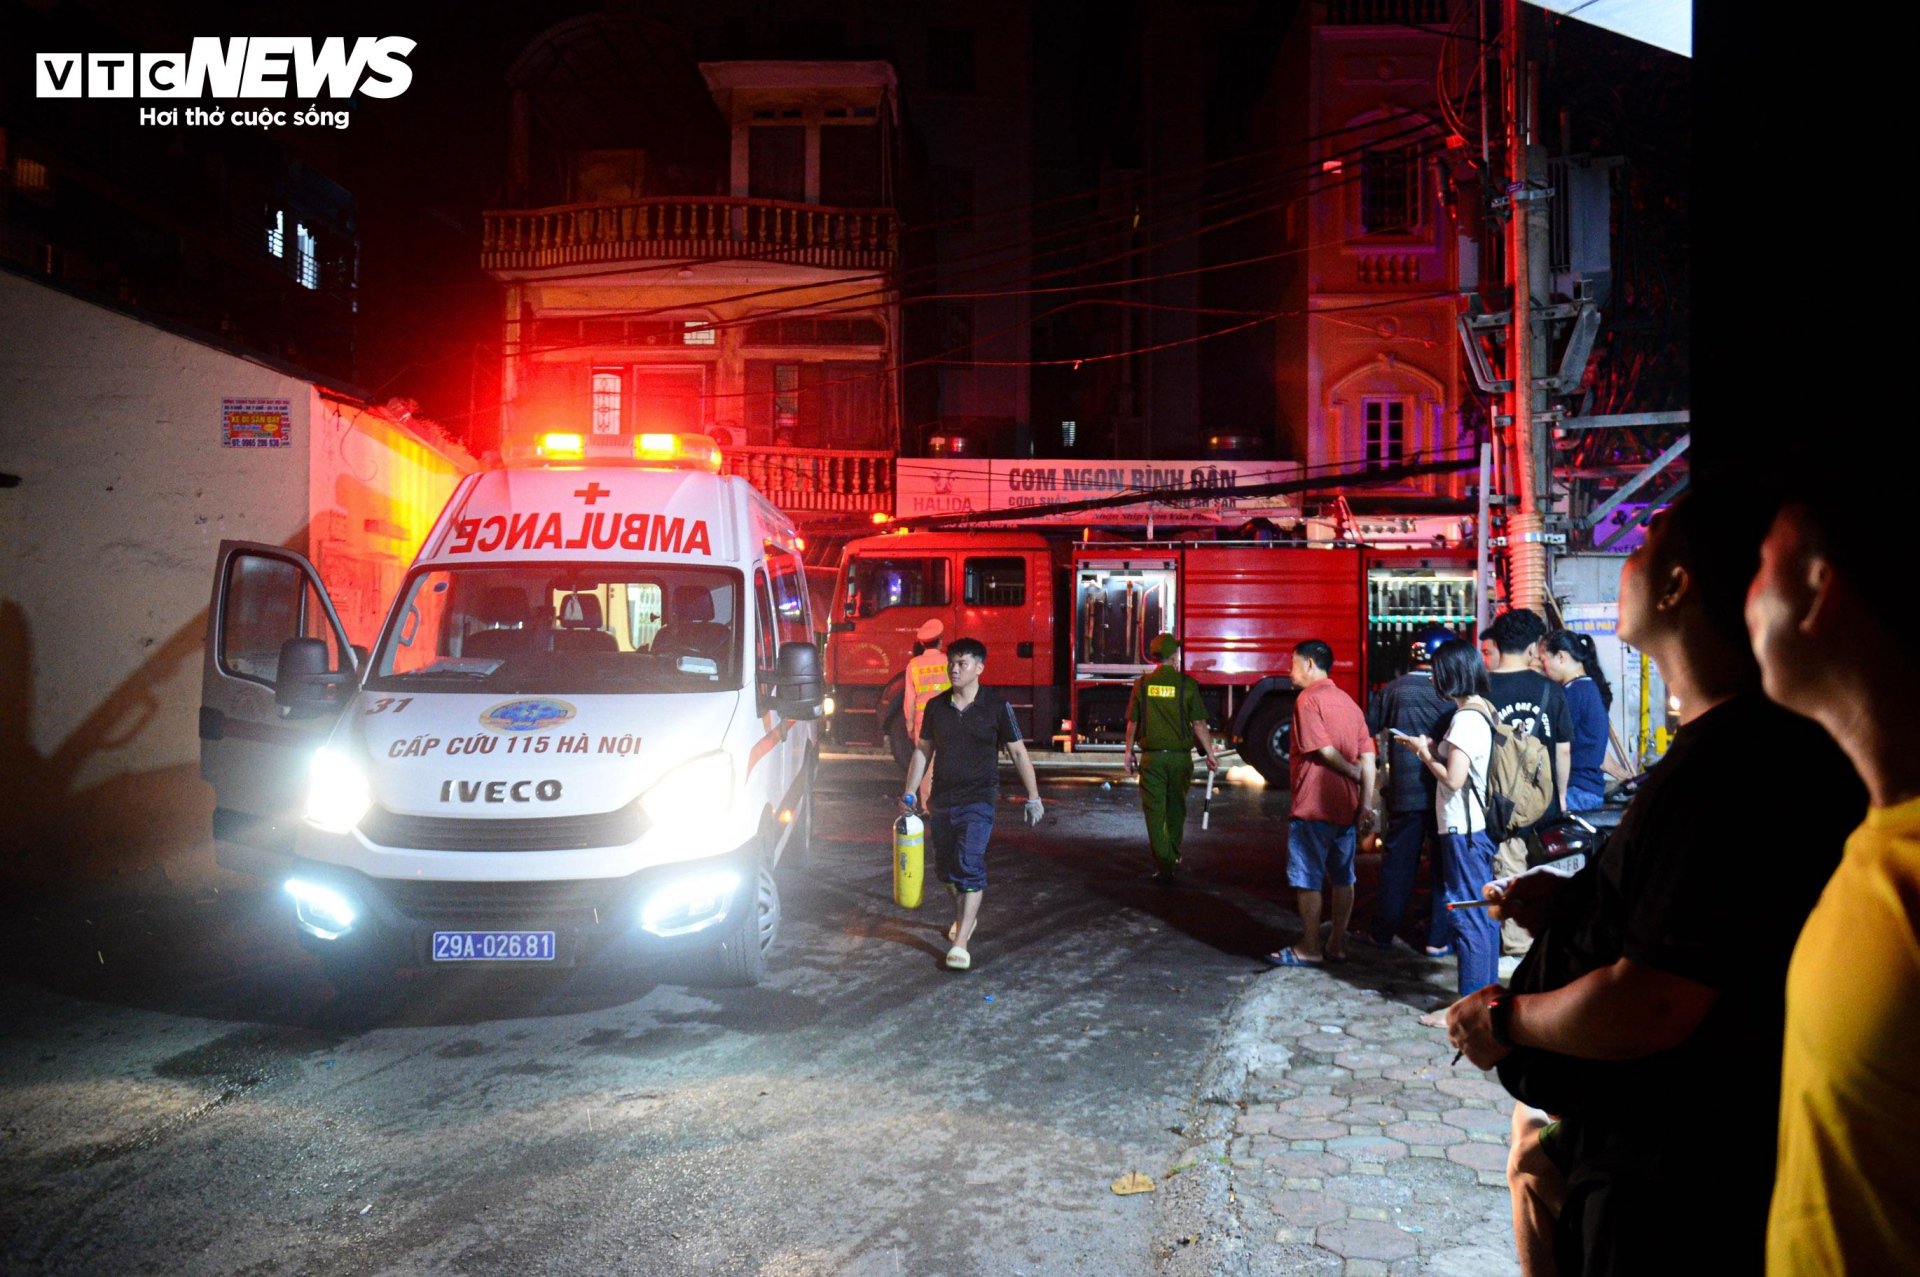 Hiện trường vụ cháy chung cư mini ở Hà Nội trong đêm, nhiều người ngất xỉu - Ảnh 1.